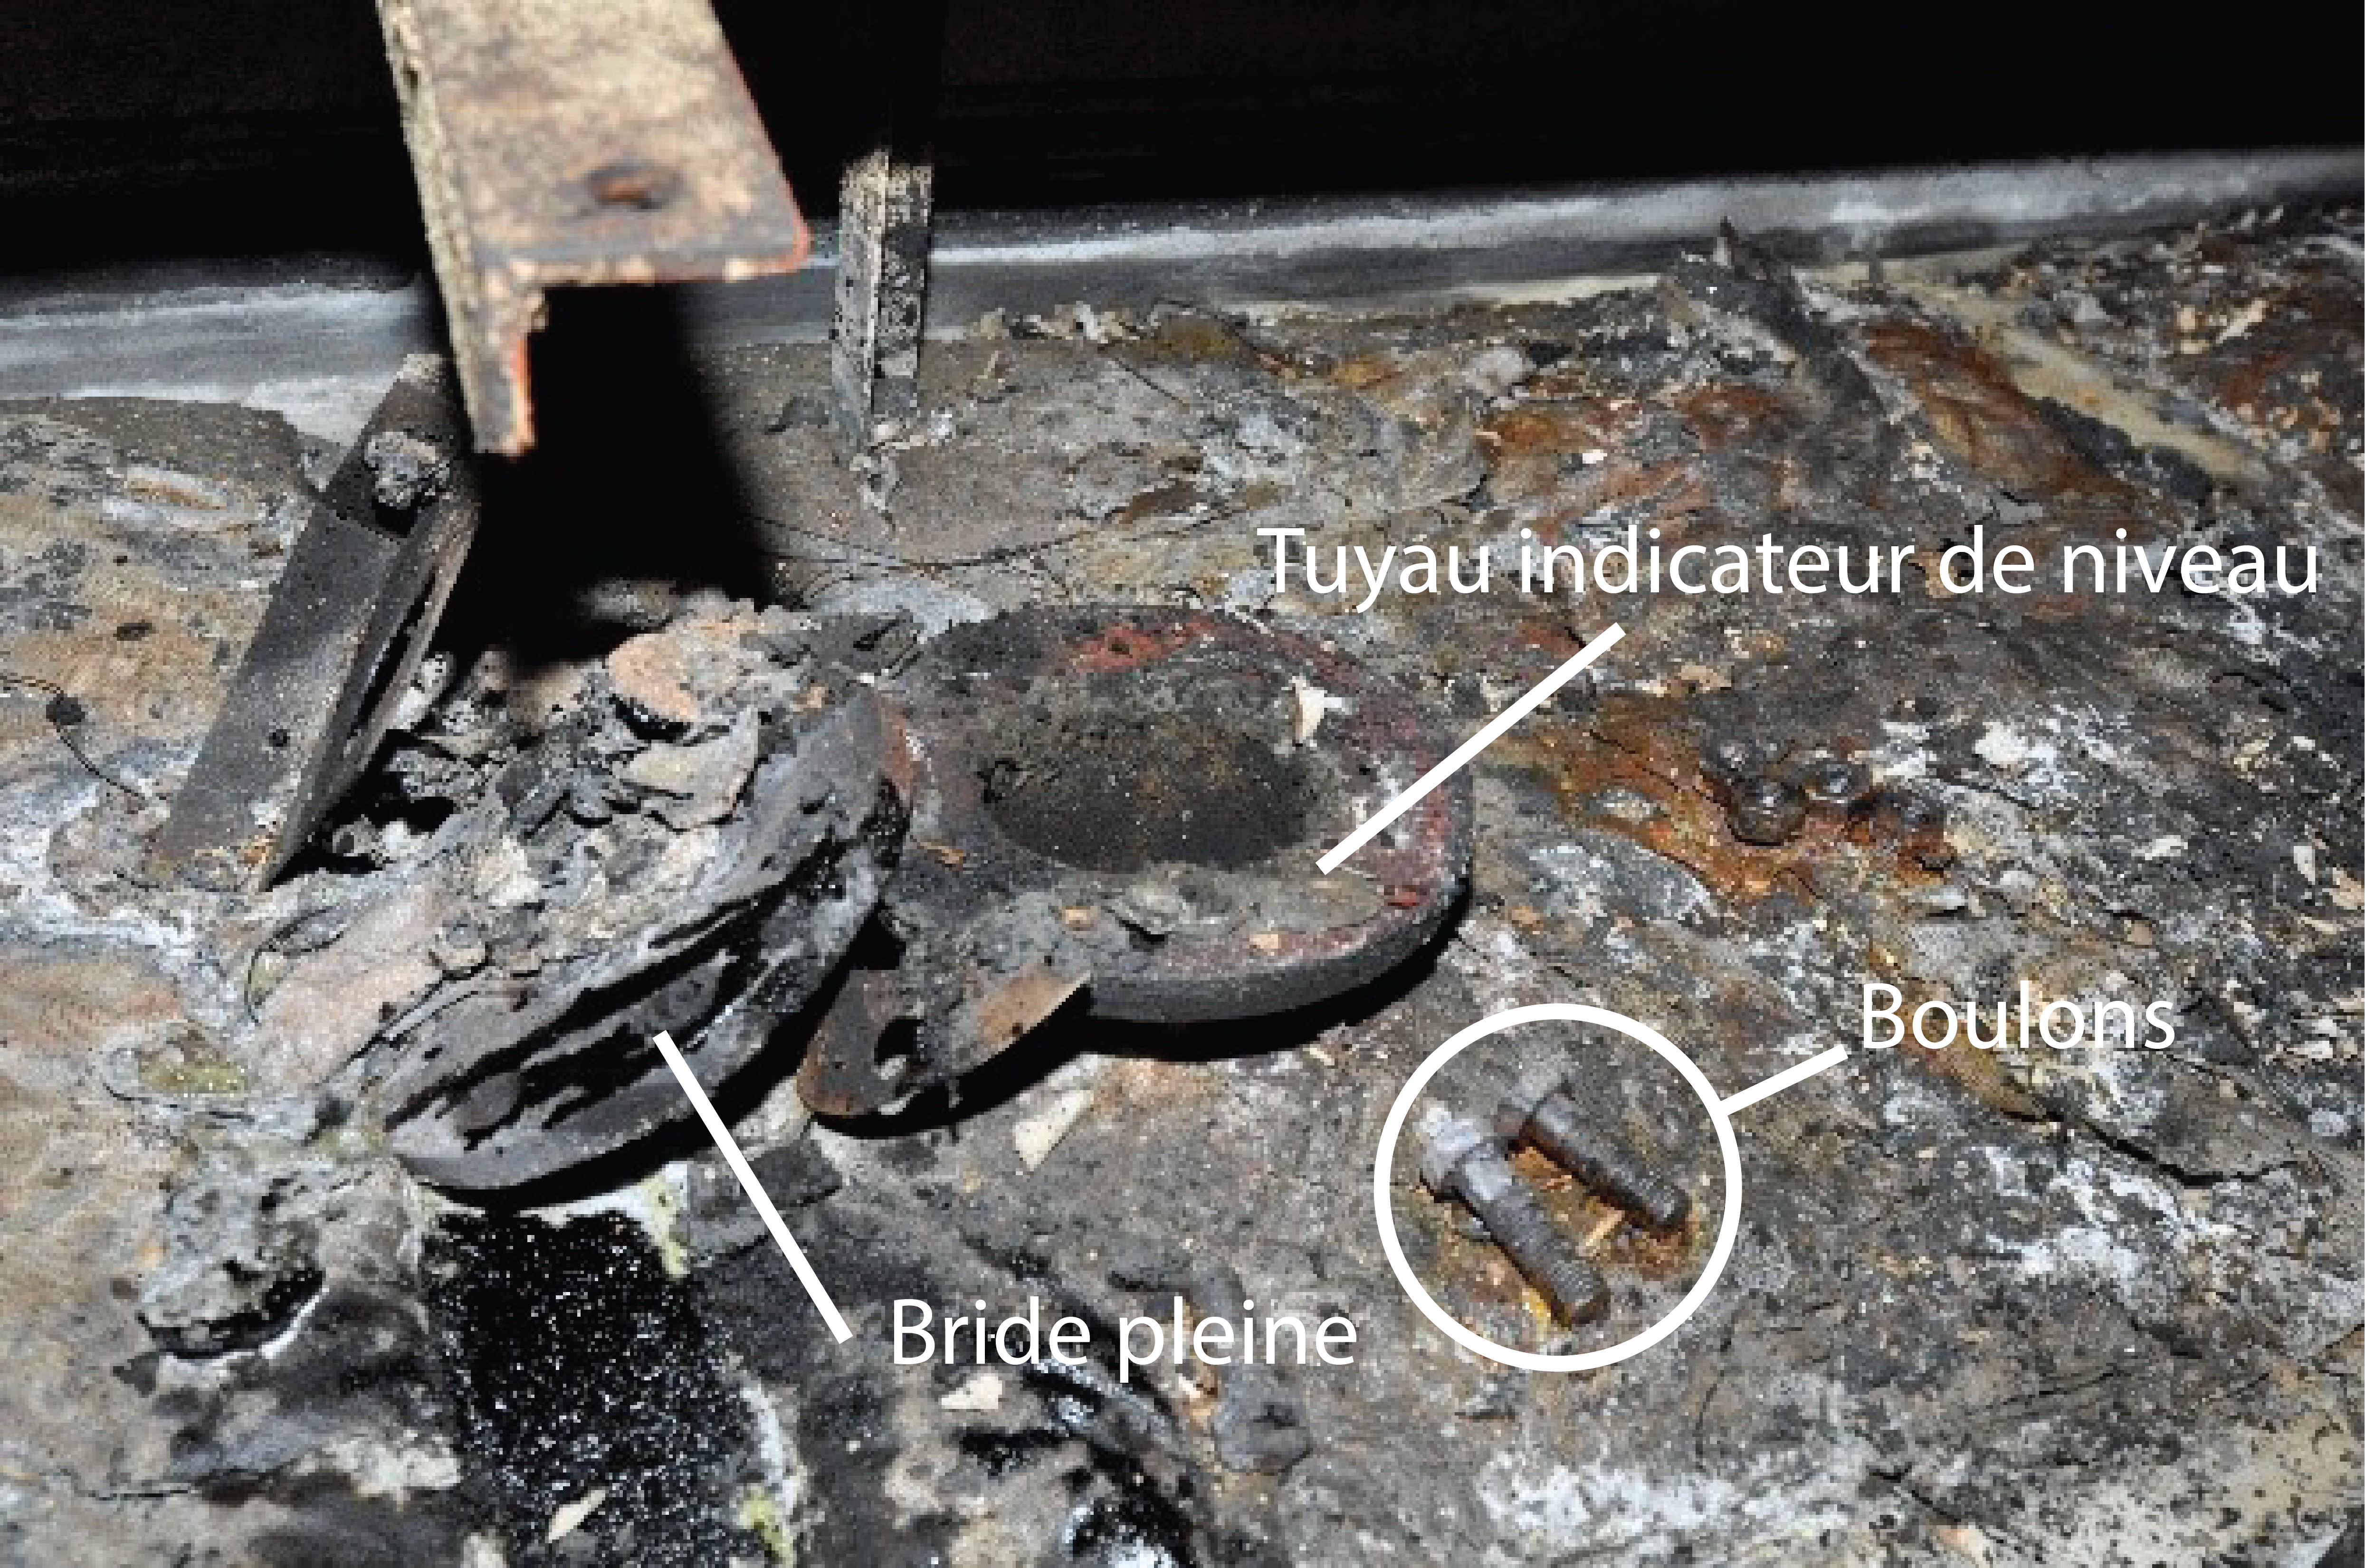 L’ouverture du tuyau indicateur de niveau, ainsi que la bride pleine, des écrous et des boulons, sur le dessus de la caisse de décantation, après l’incendie (Source : BST)